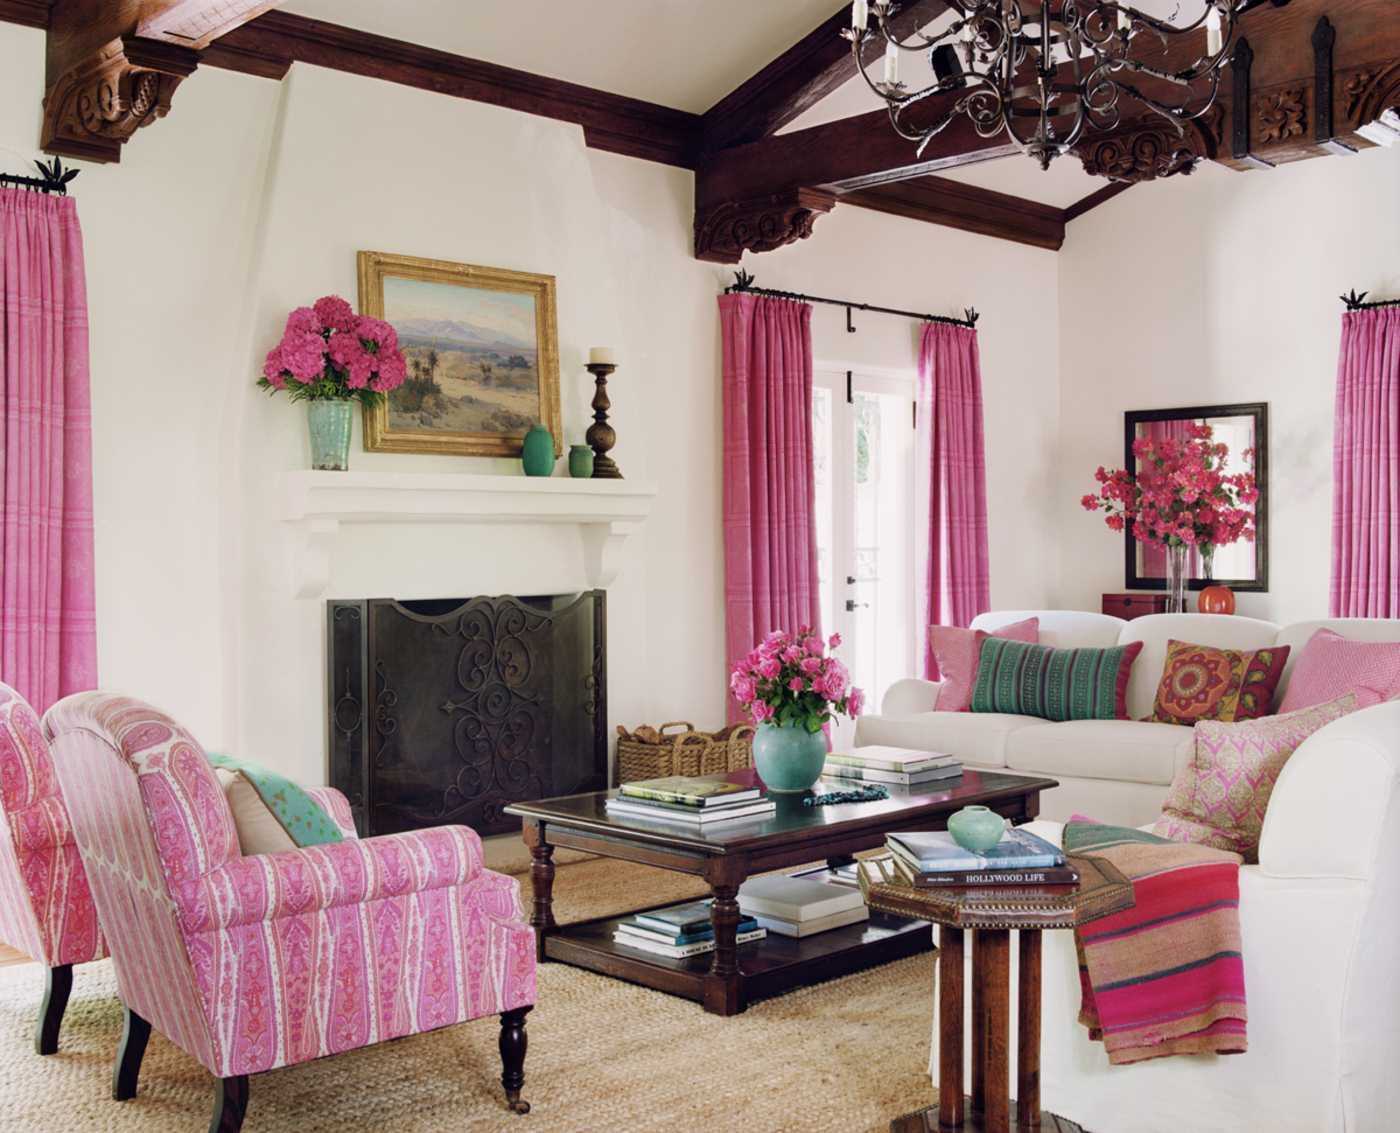 Розовый цвет в интерьере кухни и спальни, сочетание с другими оттенками в гостиной и детской, комбинирование обоев с серым и белым